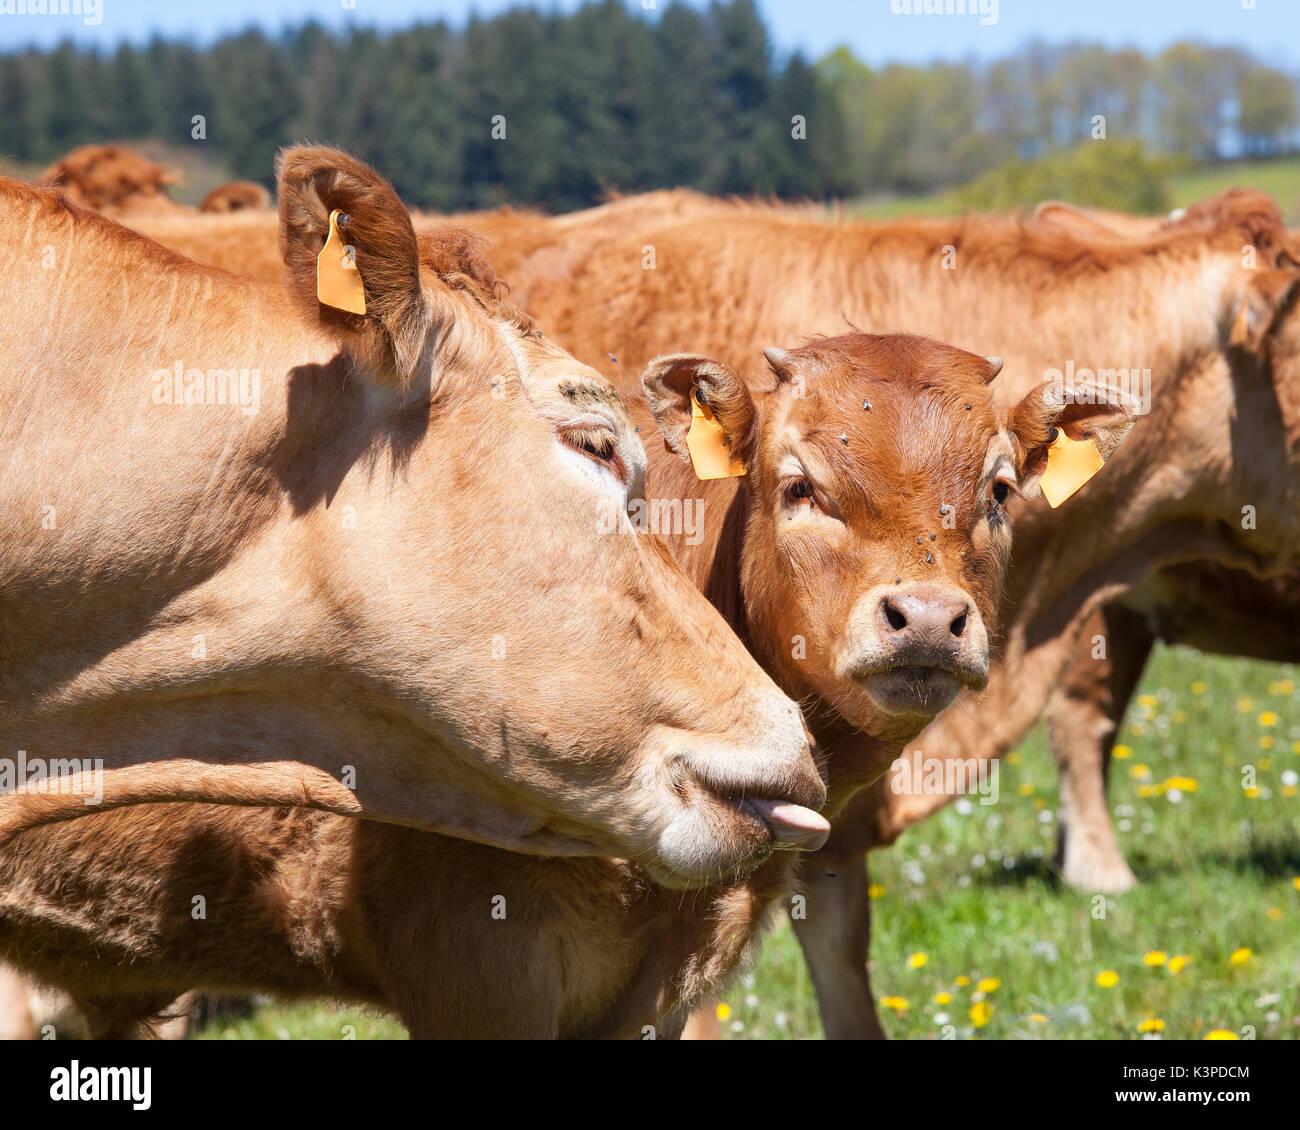 Vache Boeuf Limousin lécher le visage de son veau mâle de 1 an dans un pâturage de printemps lors du toilettage. Fermer plus la tête et sa langue Banque D'Images